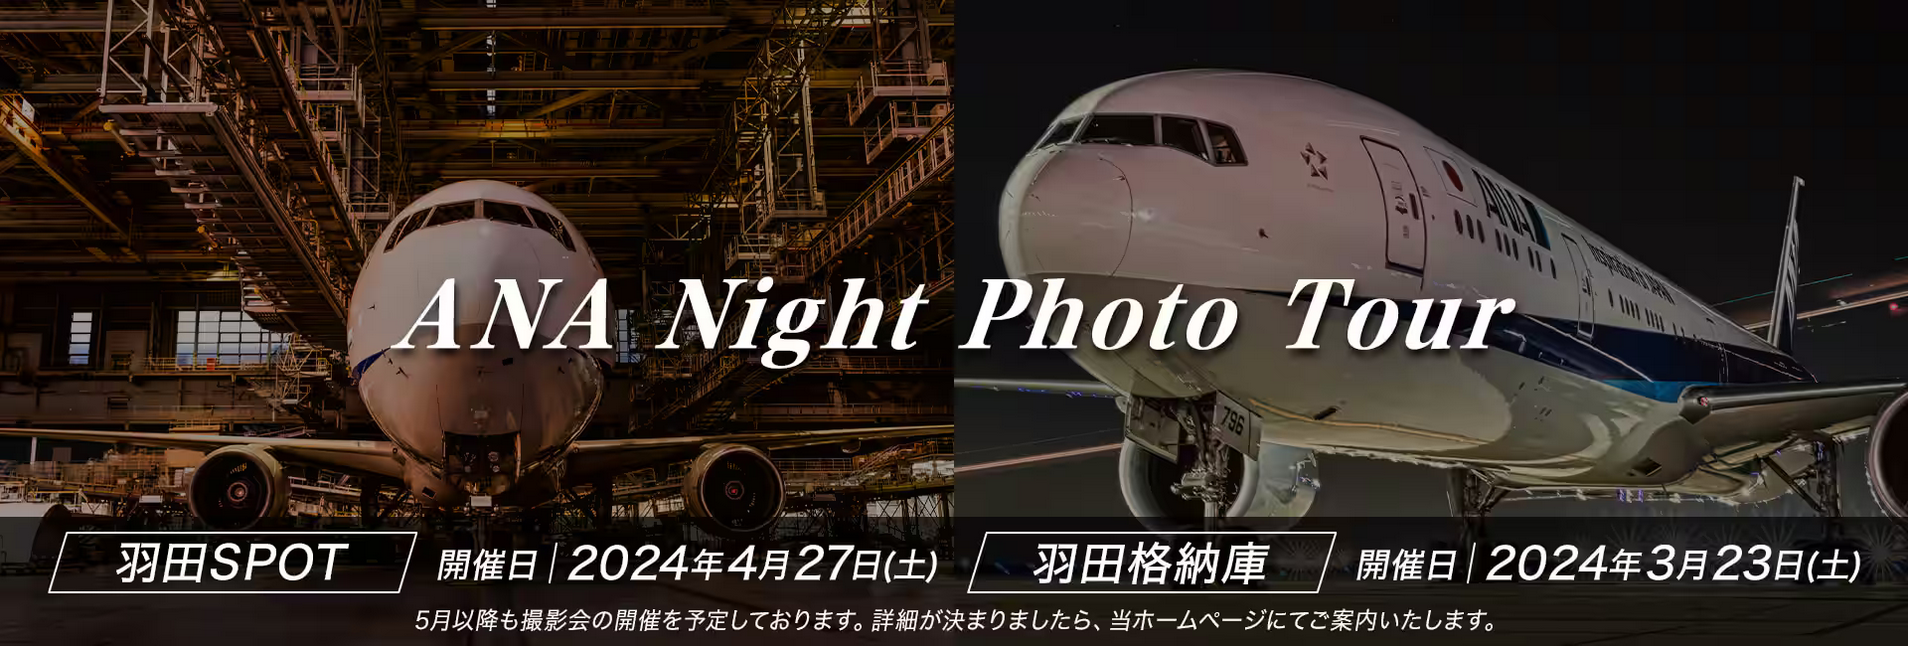 ANA、新たな撮影イベント「夜の飛行機撮影会in羽田空港SPOT」を開催 